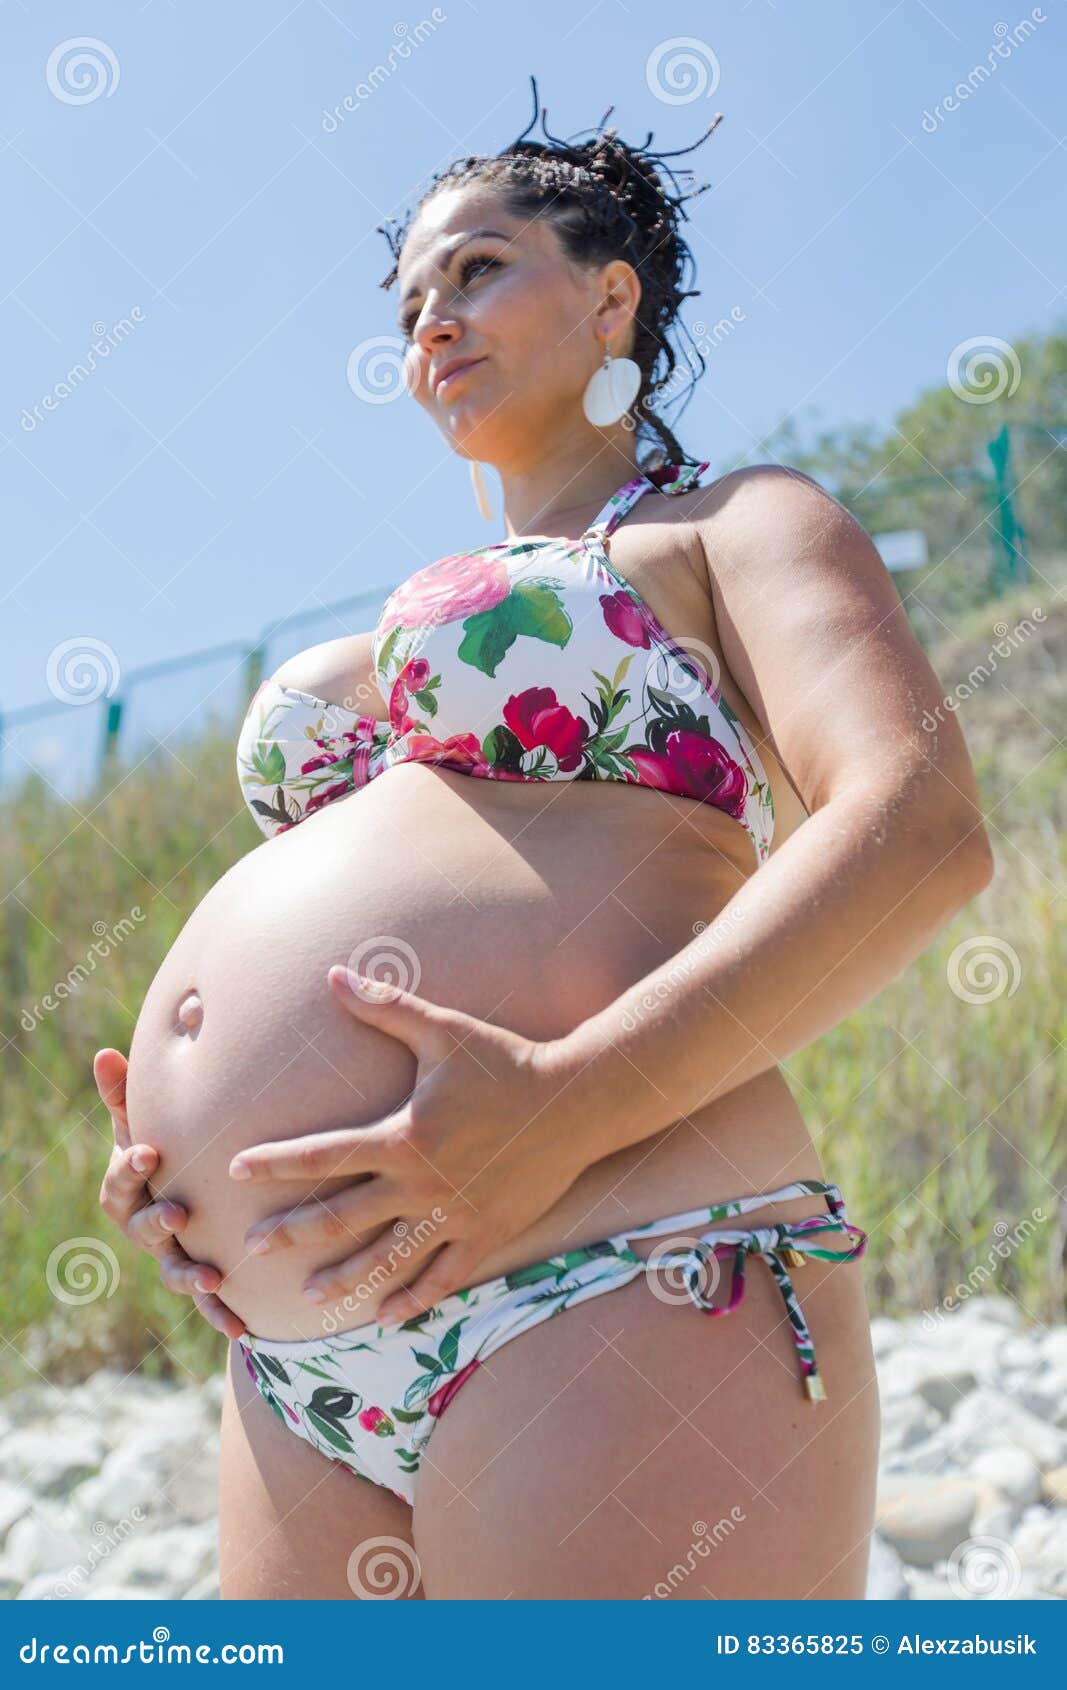 Embarazada Atractiva En El Traje De Baño Que En El Abierto Imagen de archivo - Imagen de abdomen: 83365825